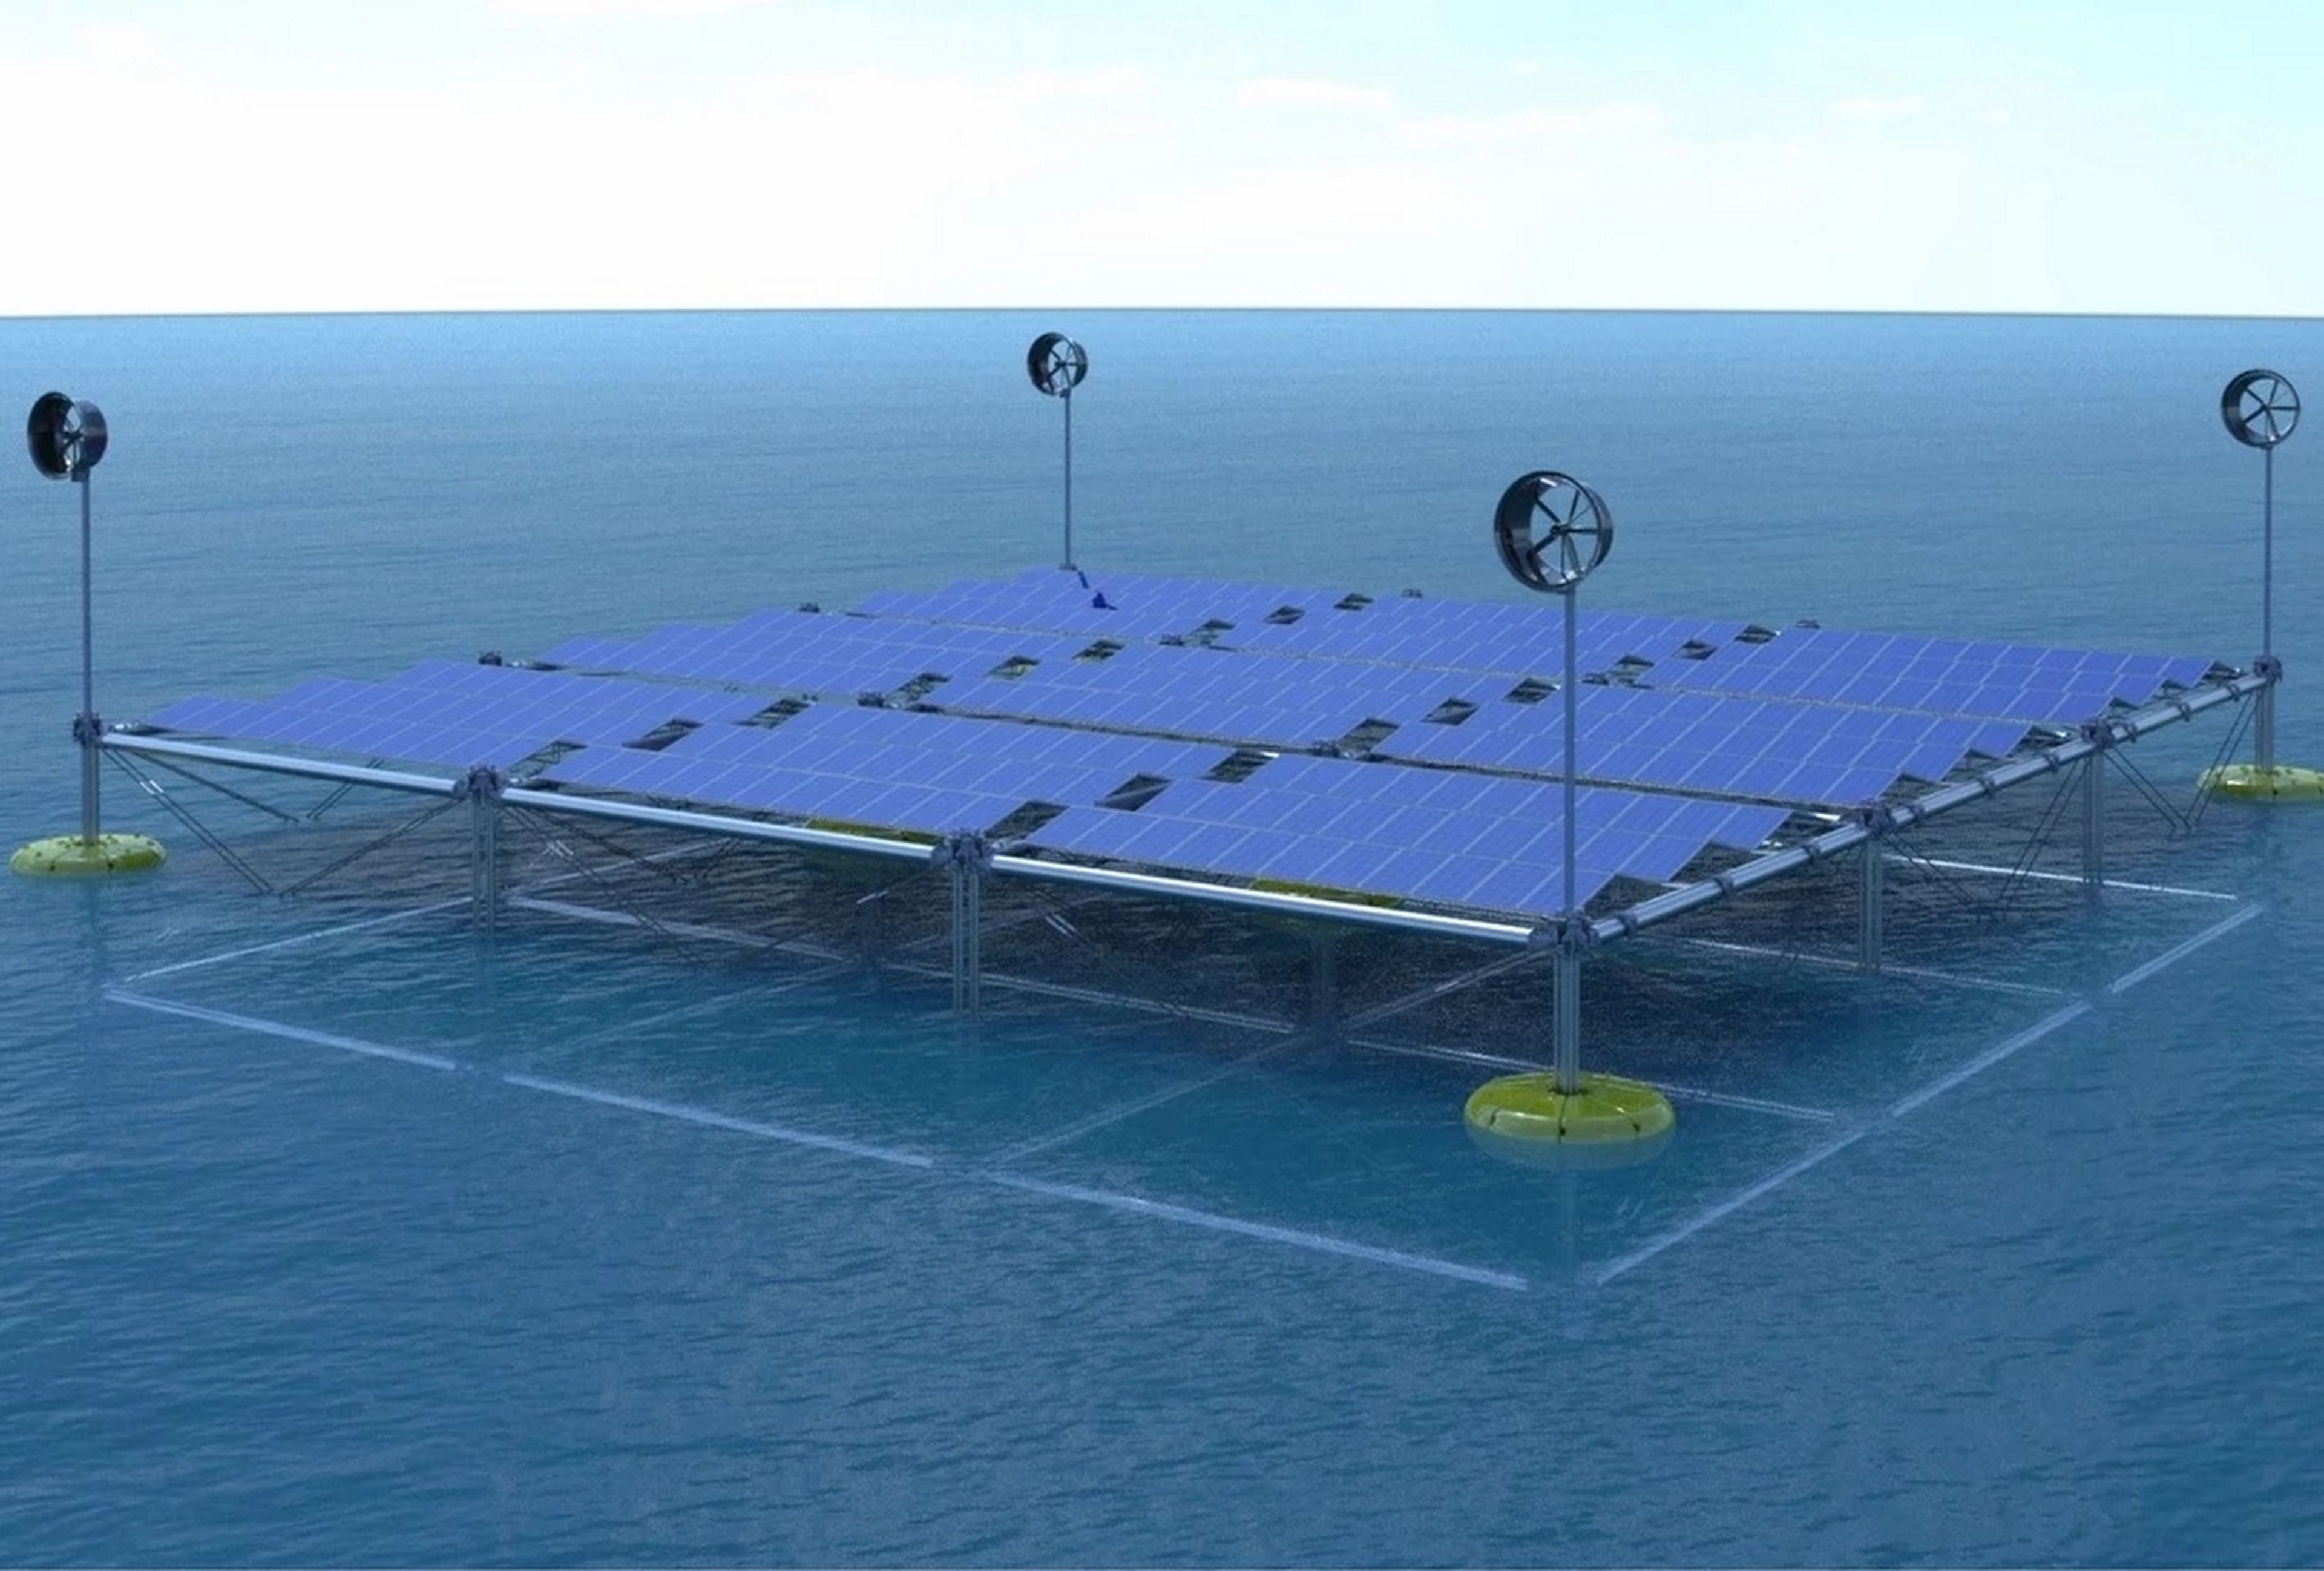 Esta es la primera plataforma que obtiene electricidad del viento, el sol y las olas, todo al mismo tiempo